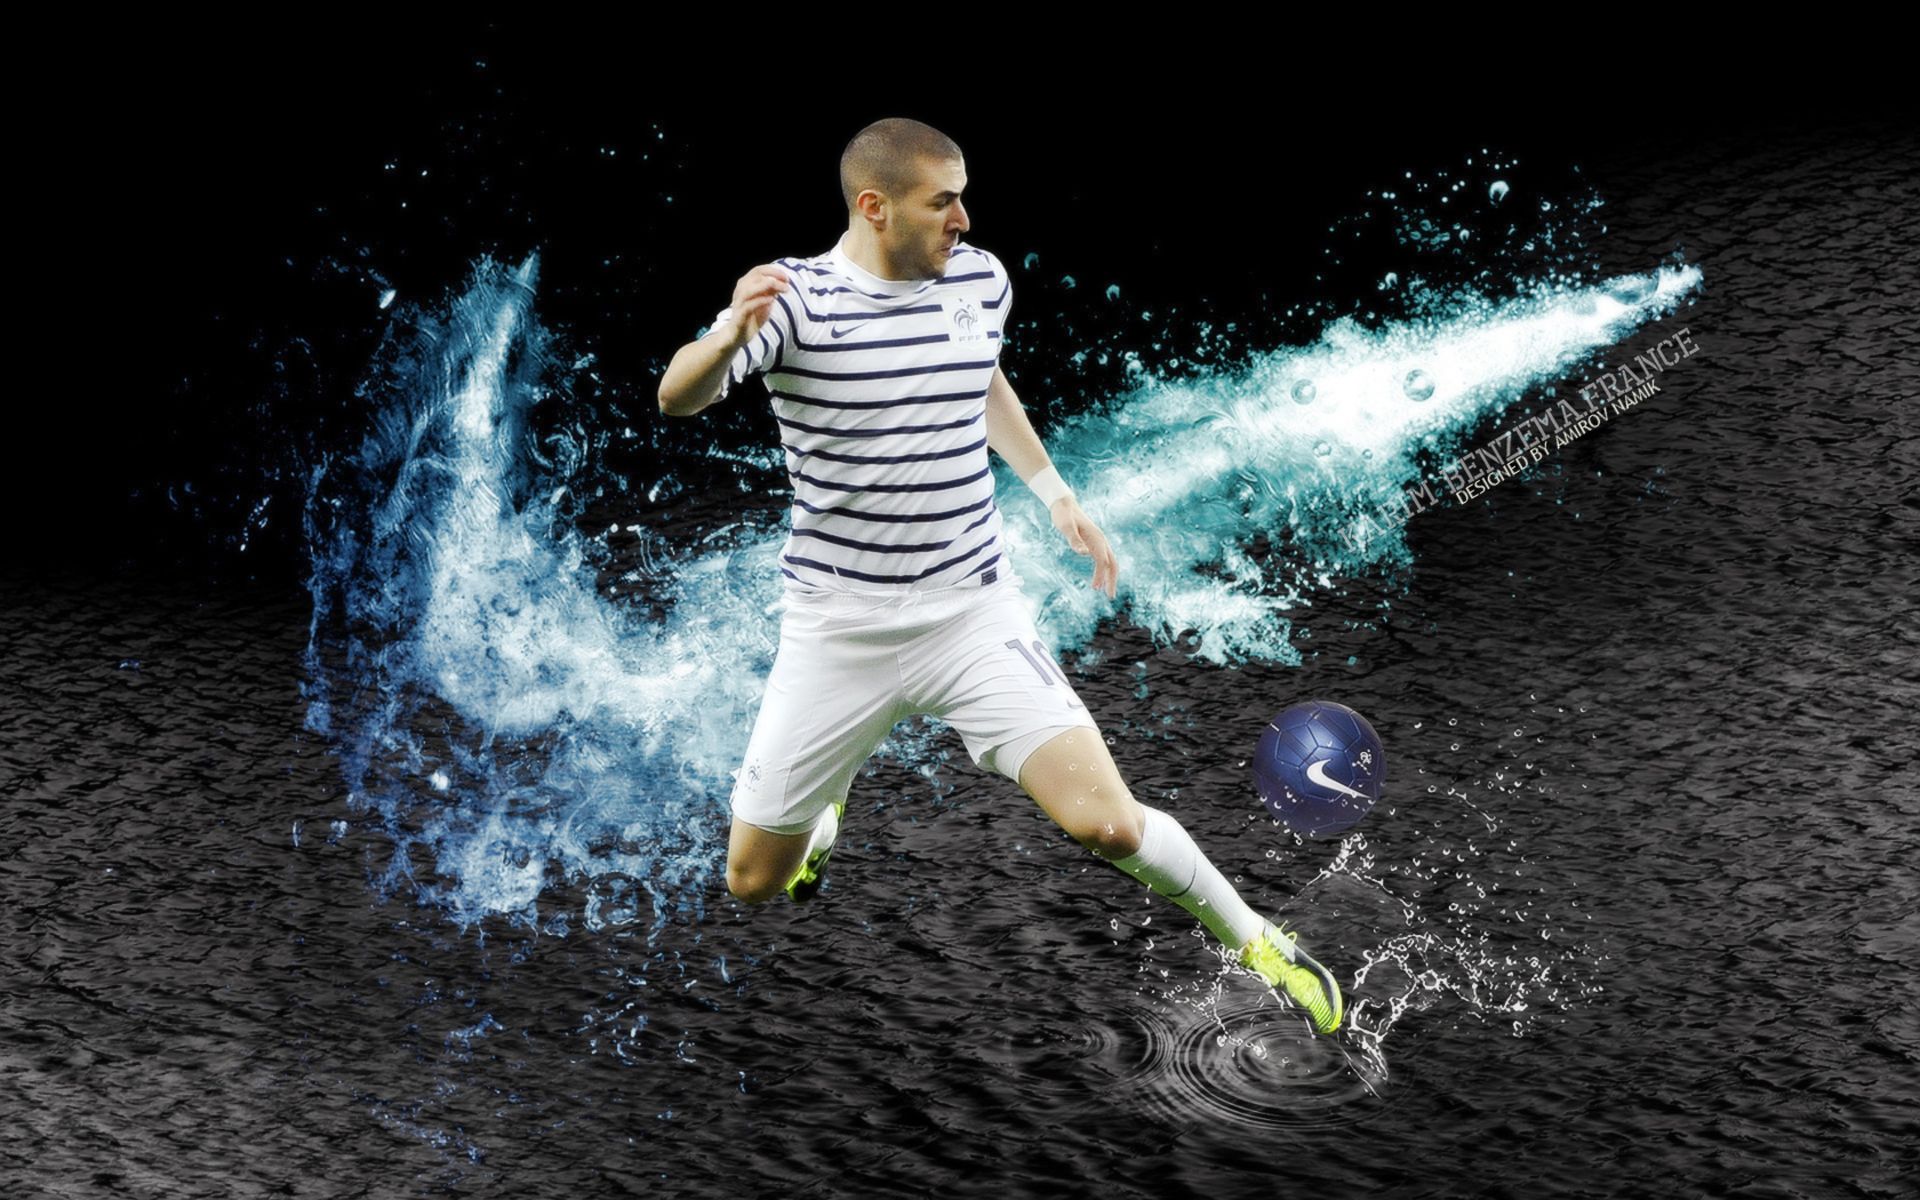 PCデスクトップにスポーツ, サッカー, カリム・ベンゼマ, サッカー フランス代表画像を無料でダウンロード